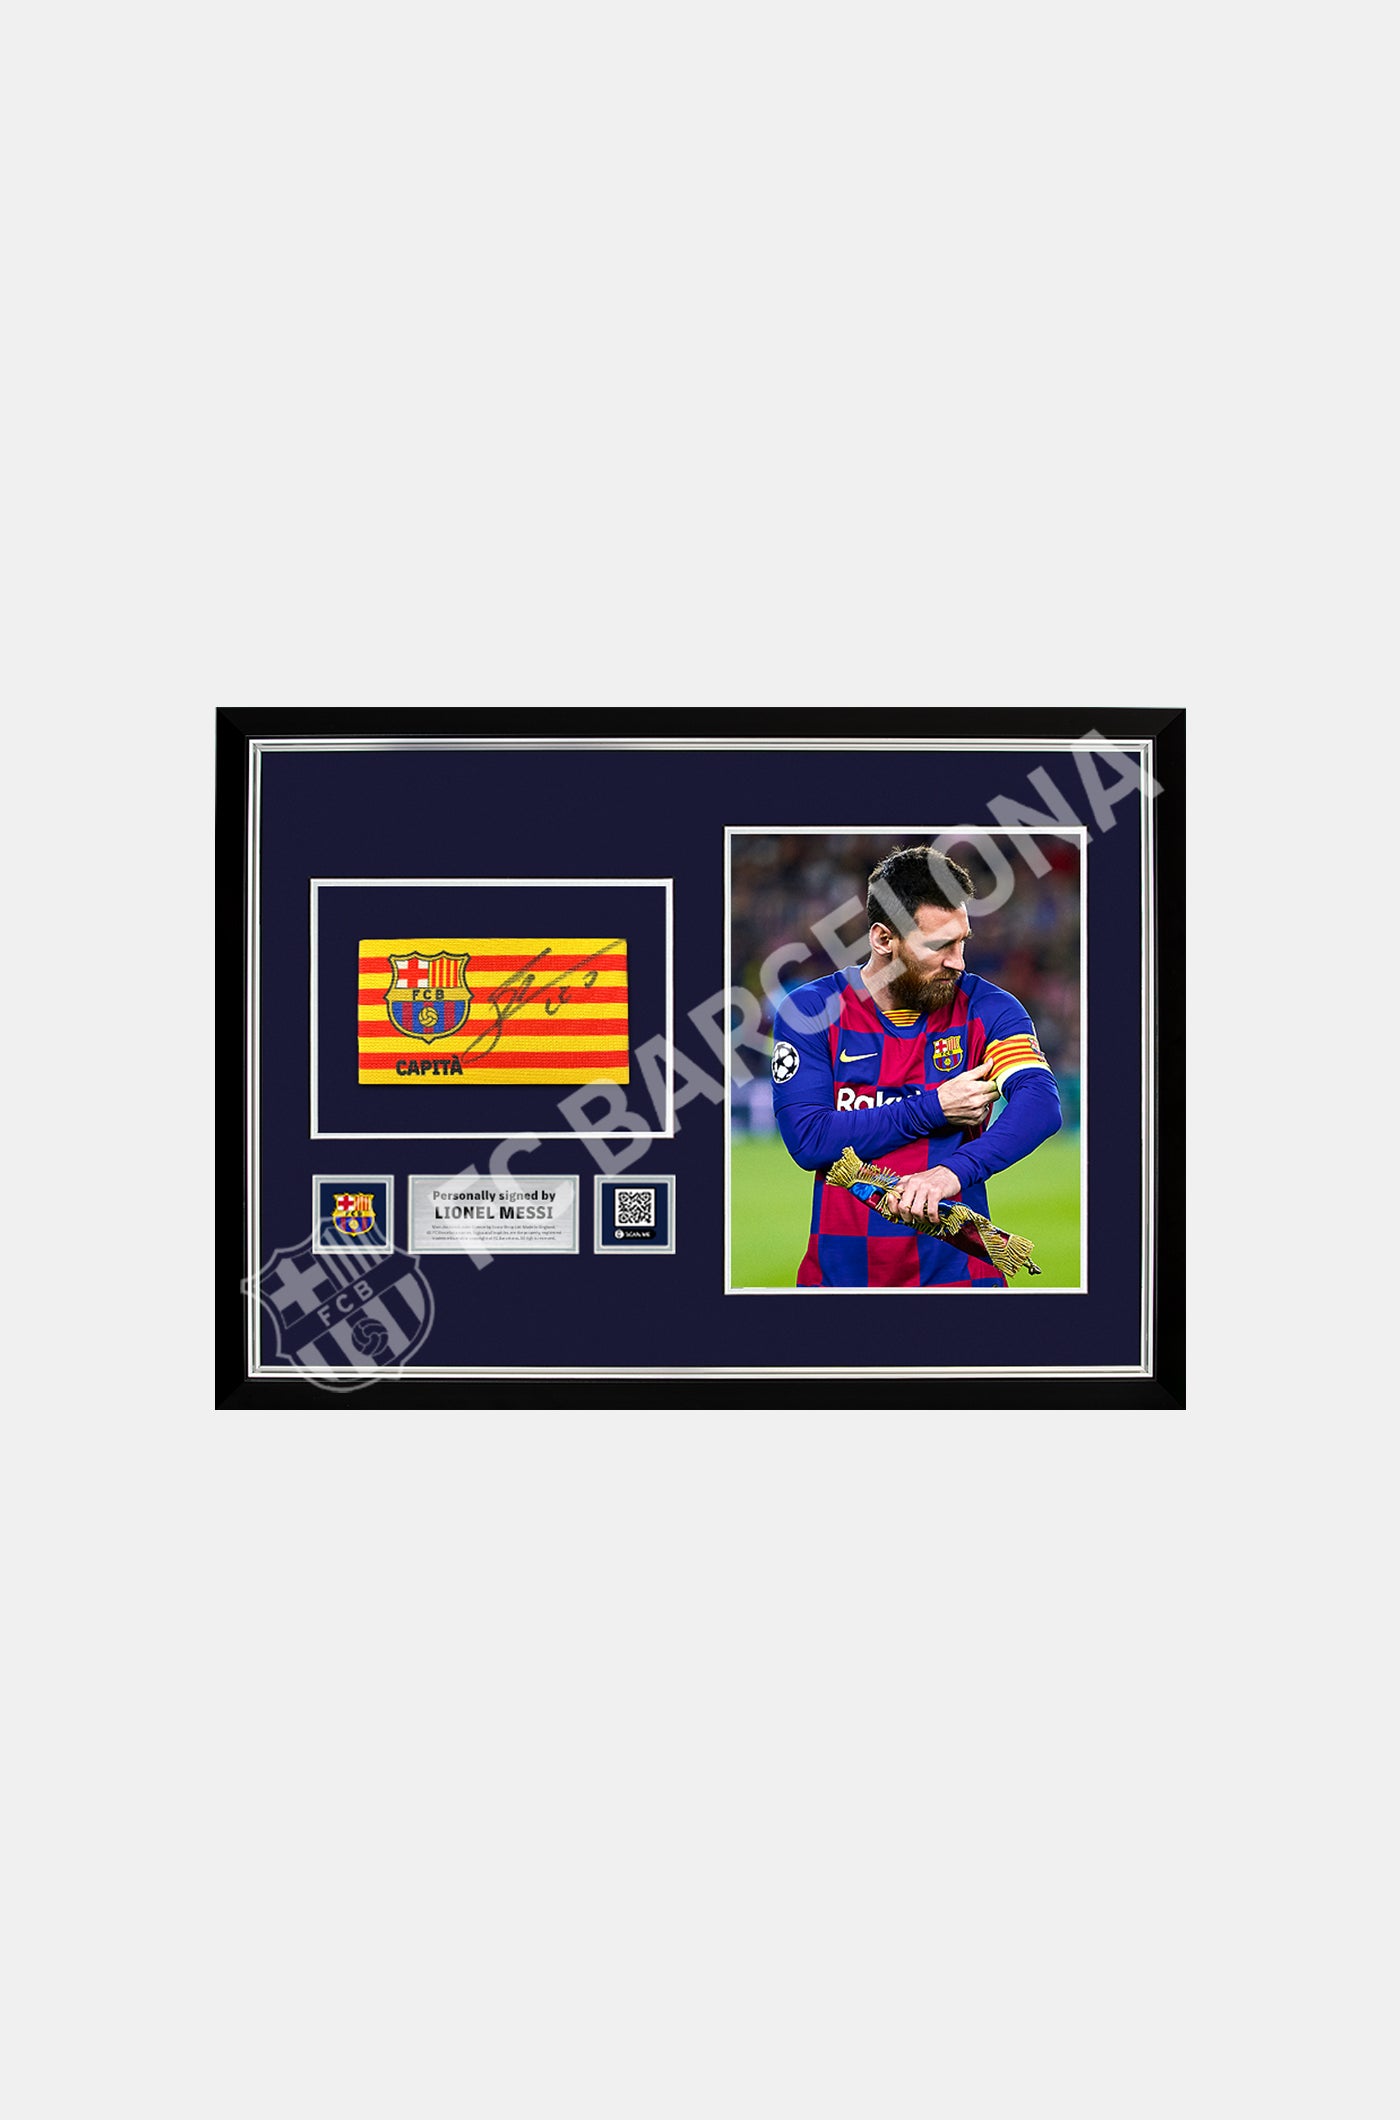 Brassard officiel de capitaine du FC Barcelone signé par Leo Messi